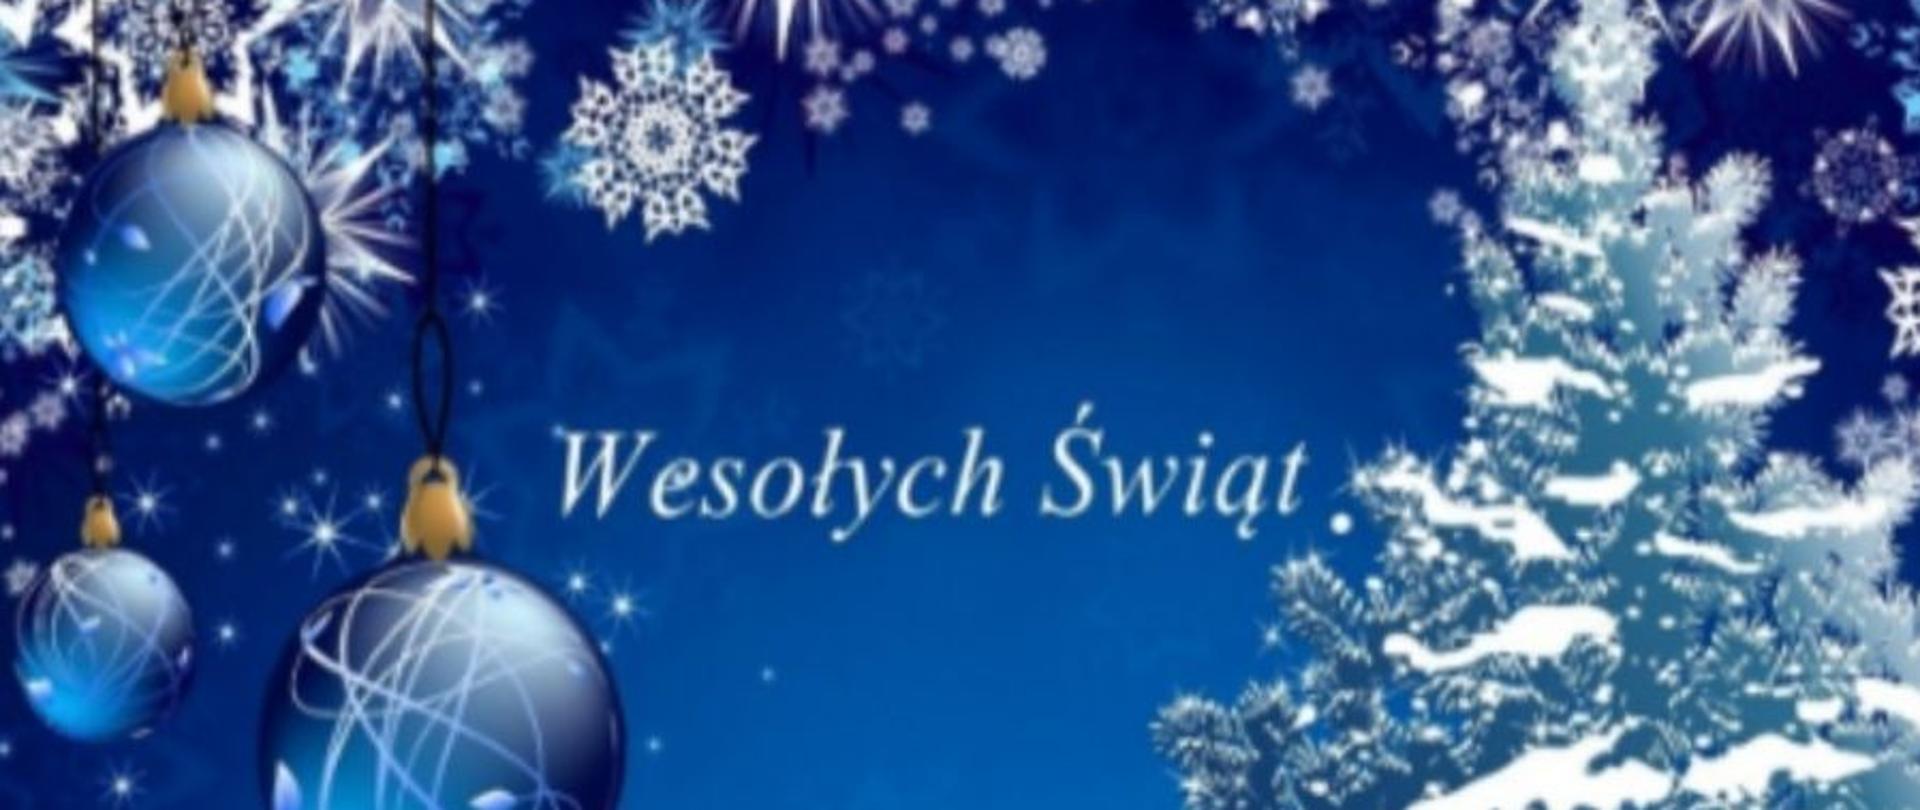 Kartka z okazji Świąt Bożego Narodzenia, na niebieskim tle elementy graficzne nawiązujące do symboliki Świąt Bożego Narodzenia